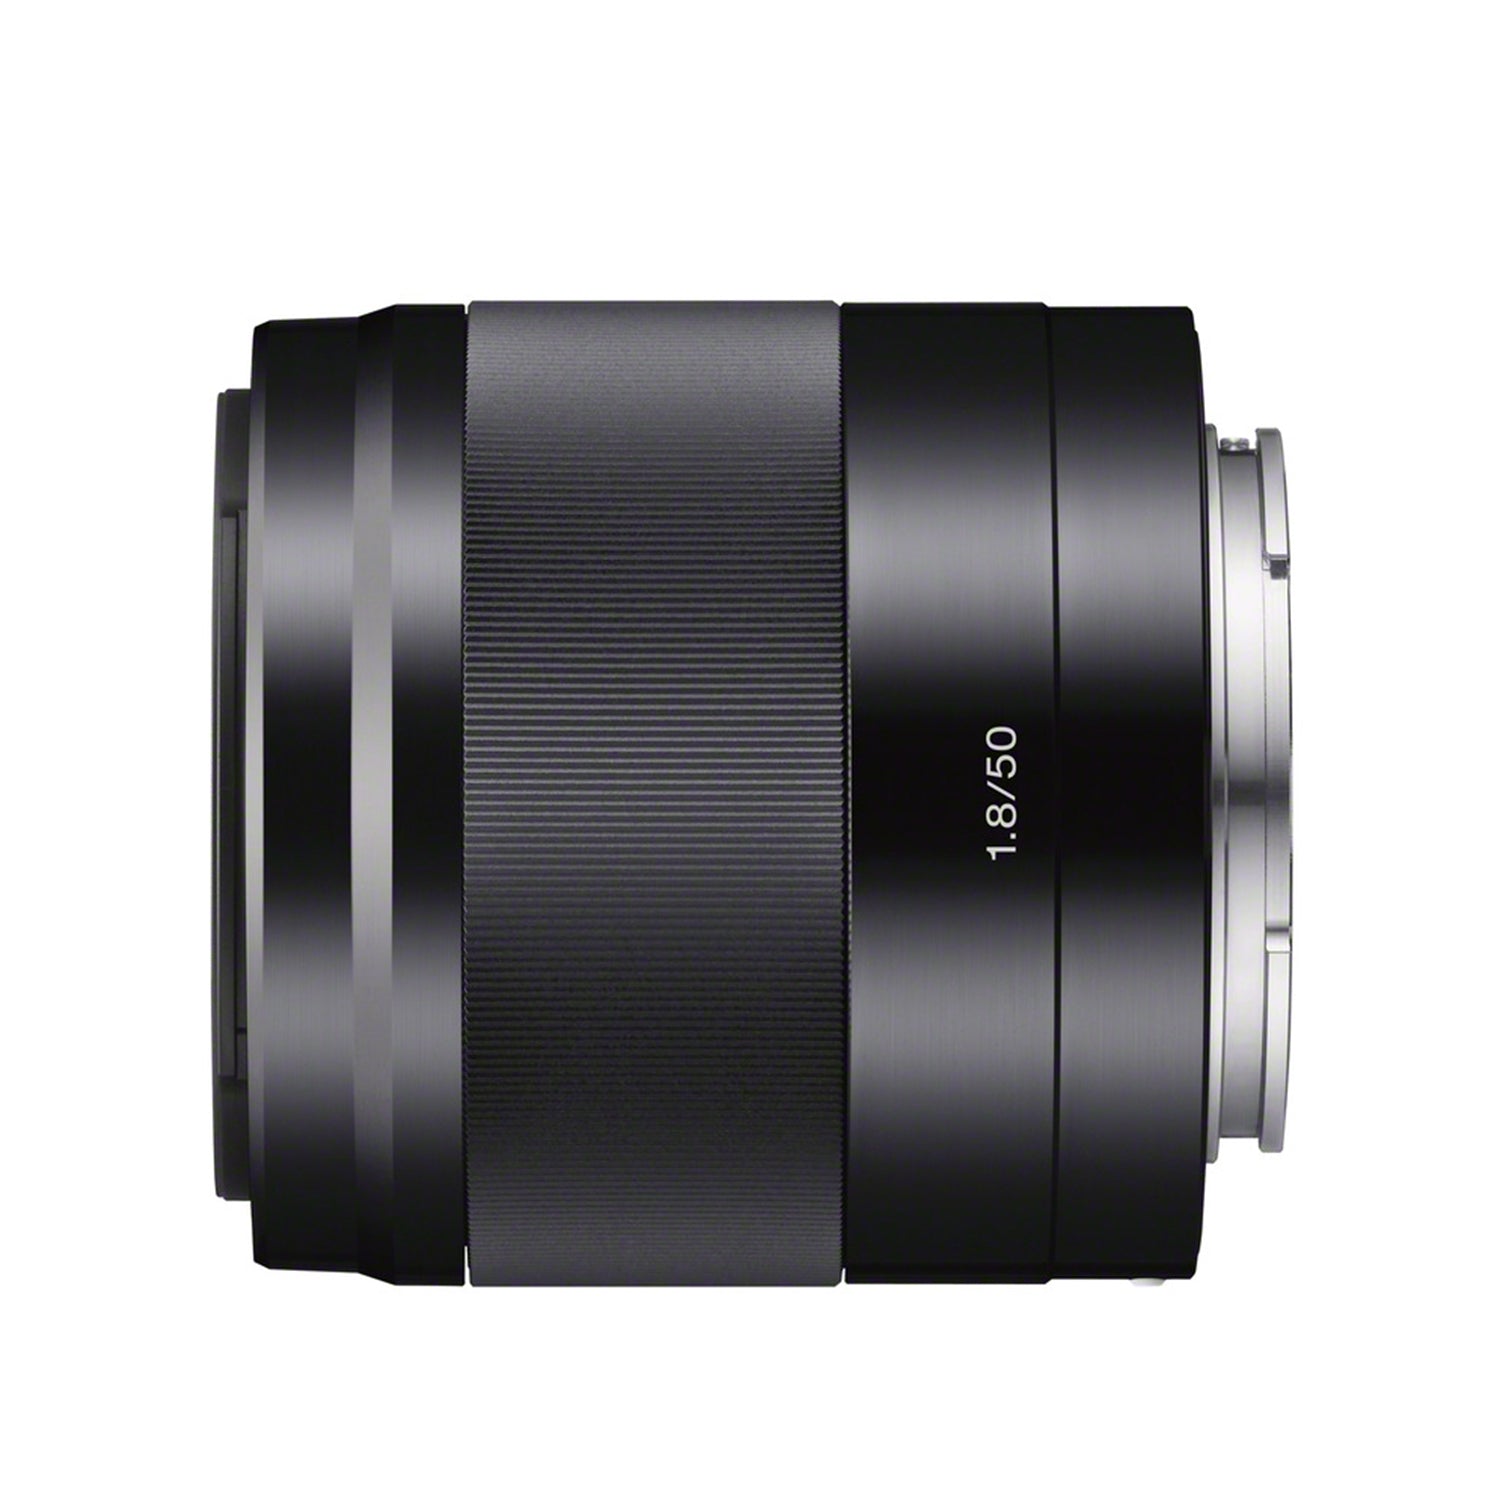 Sony E 50mm f/1.8 OSS Lens